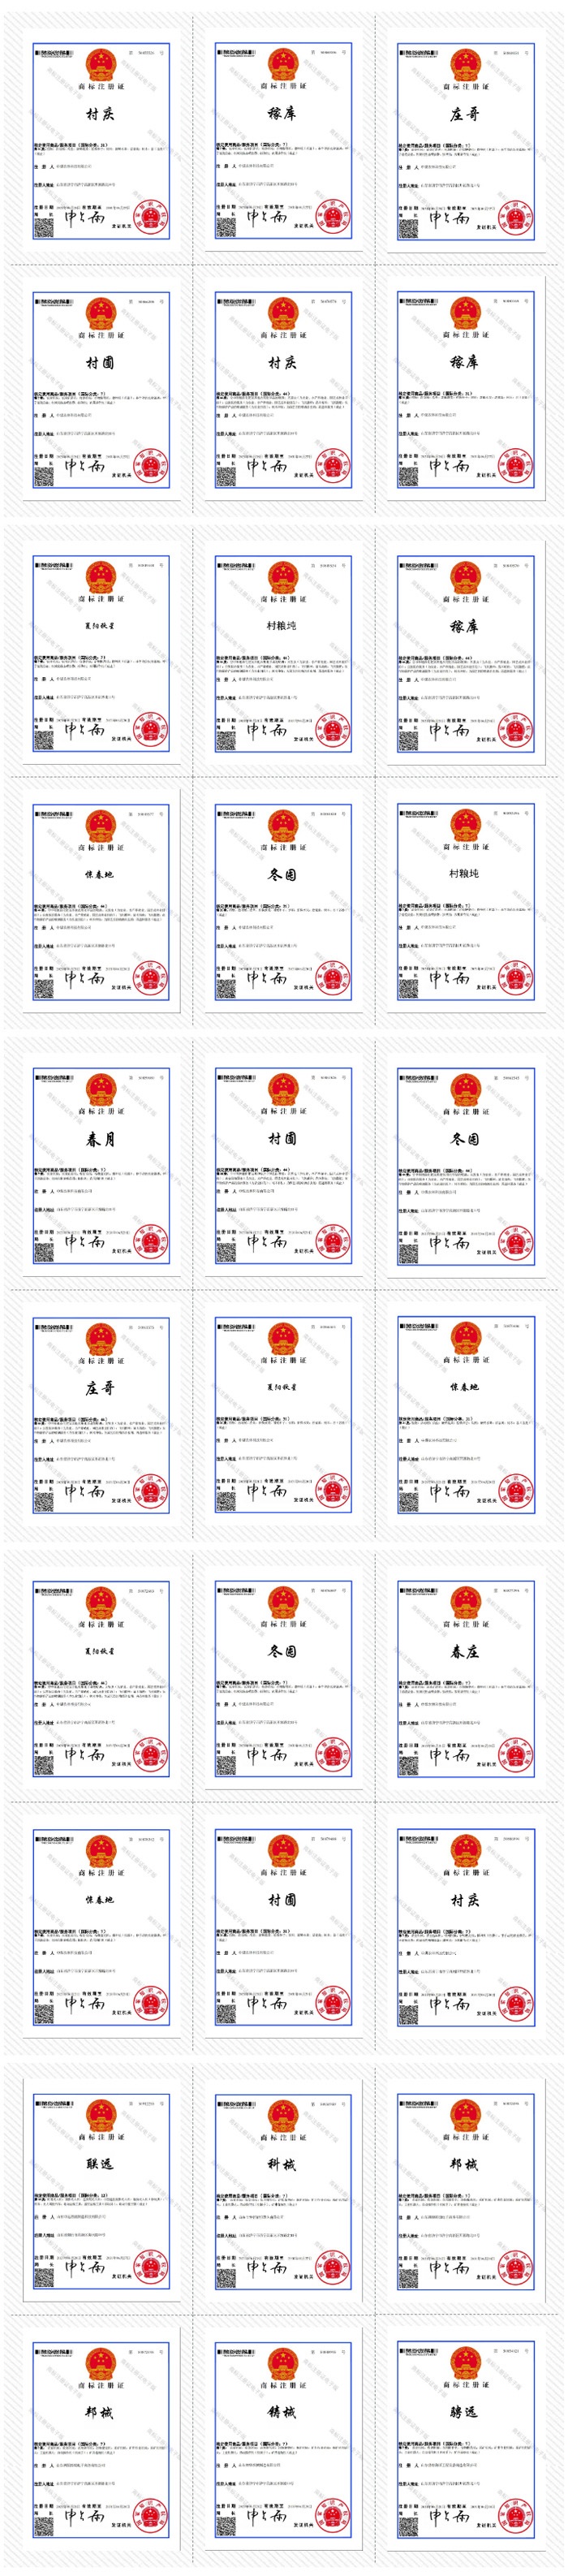 Поздравляем China Coal Group С Получением 30 Национальных Сертификатов Регистрации Товарных Знаков